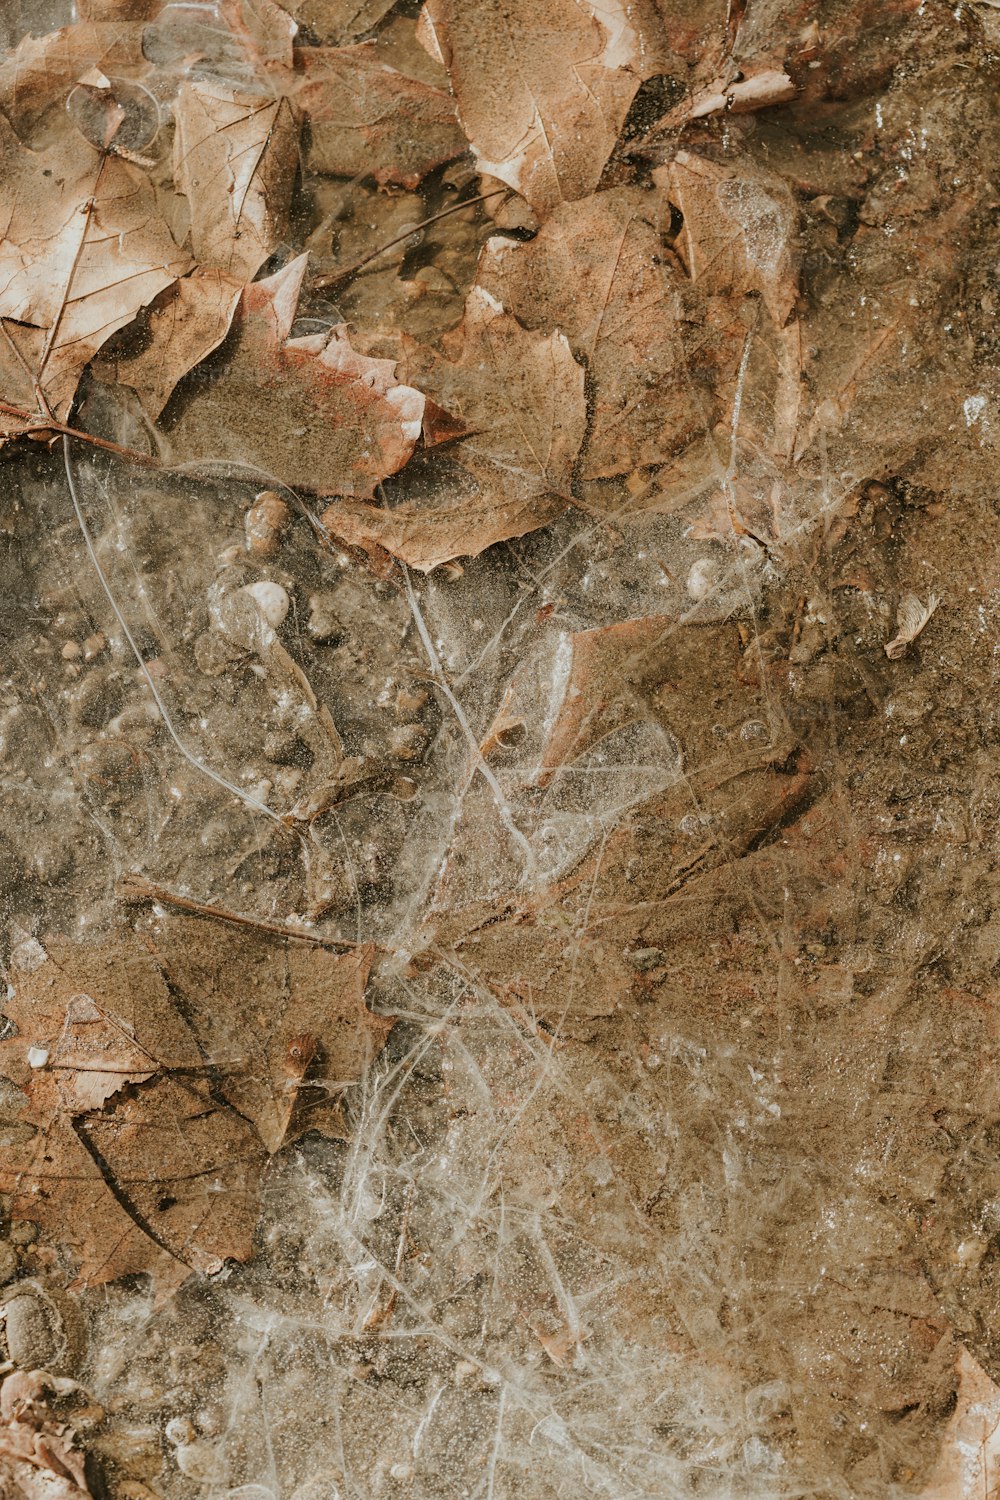 um close up de folhas e sujeira no chão